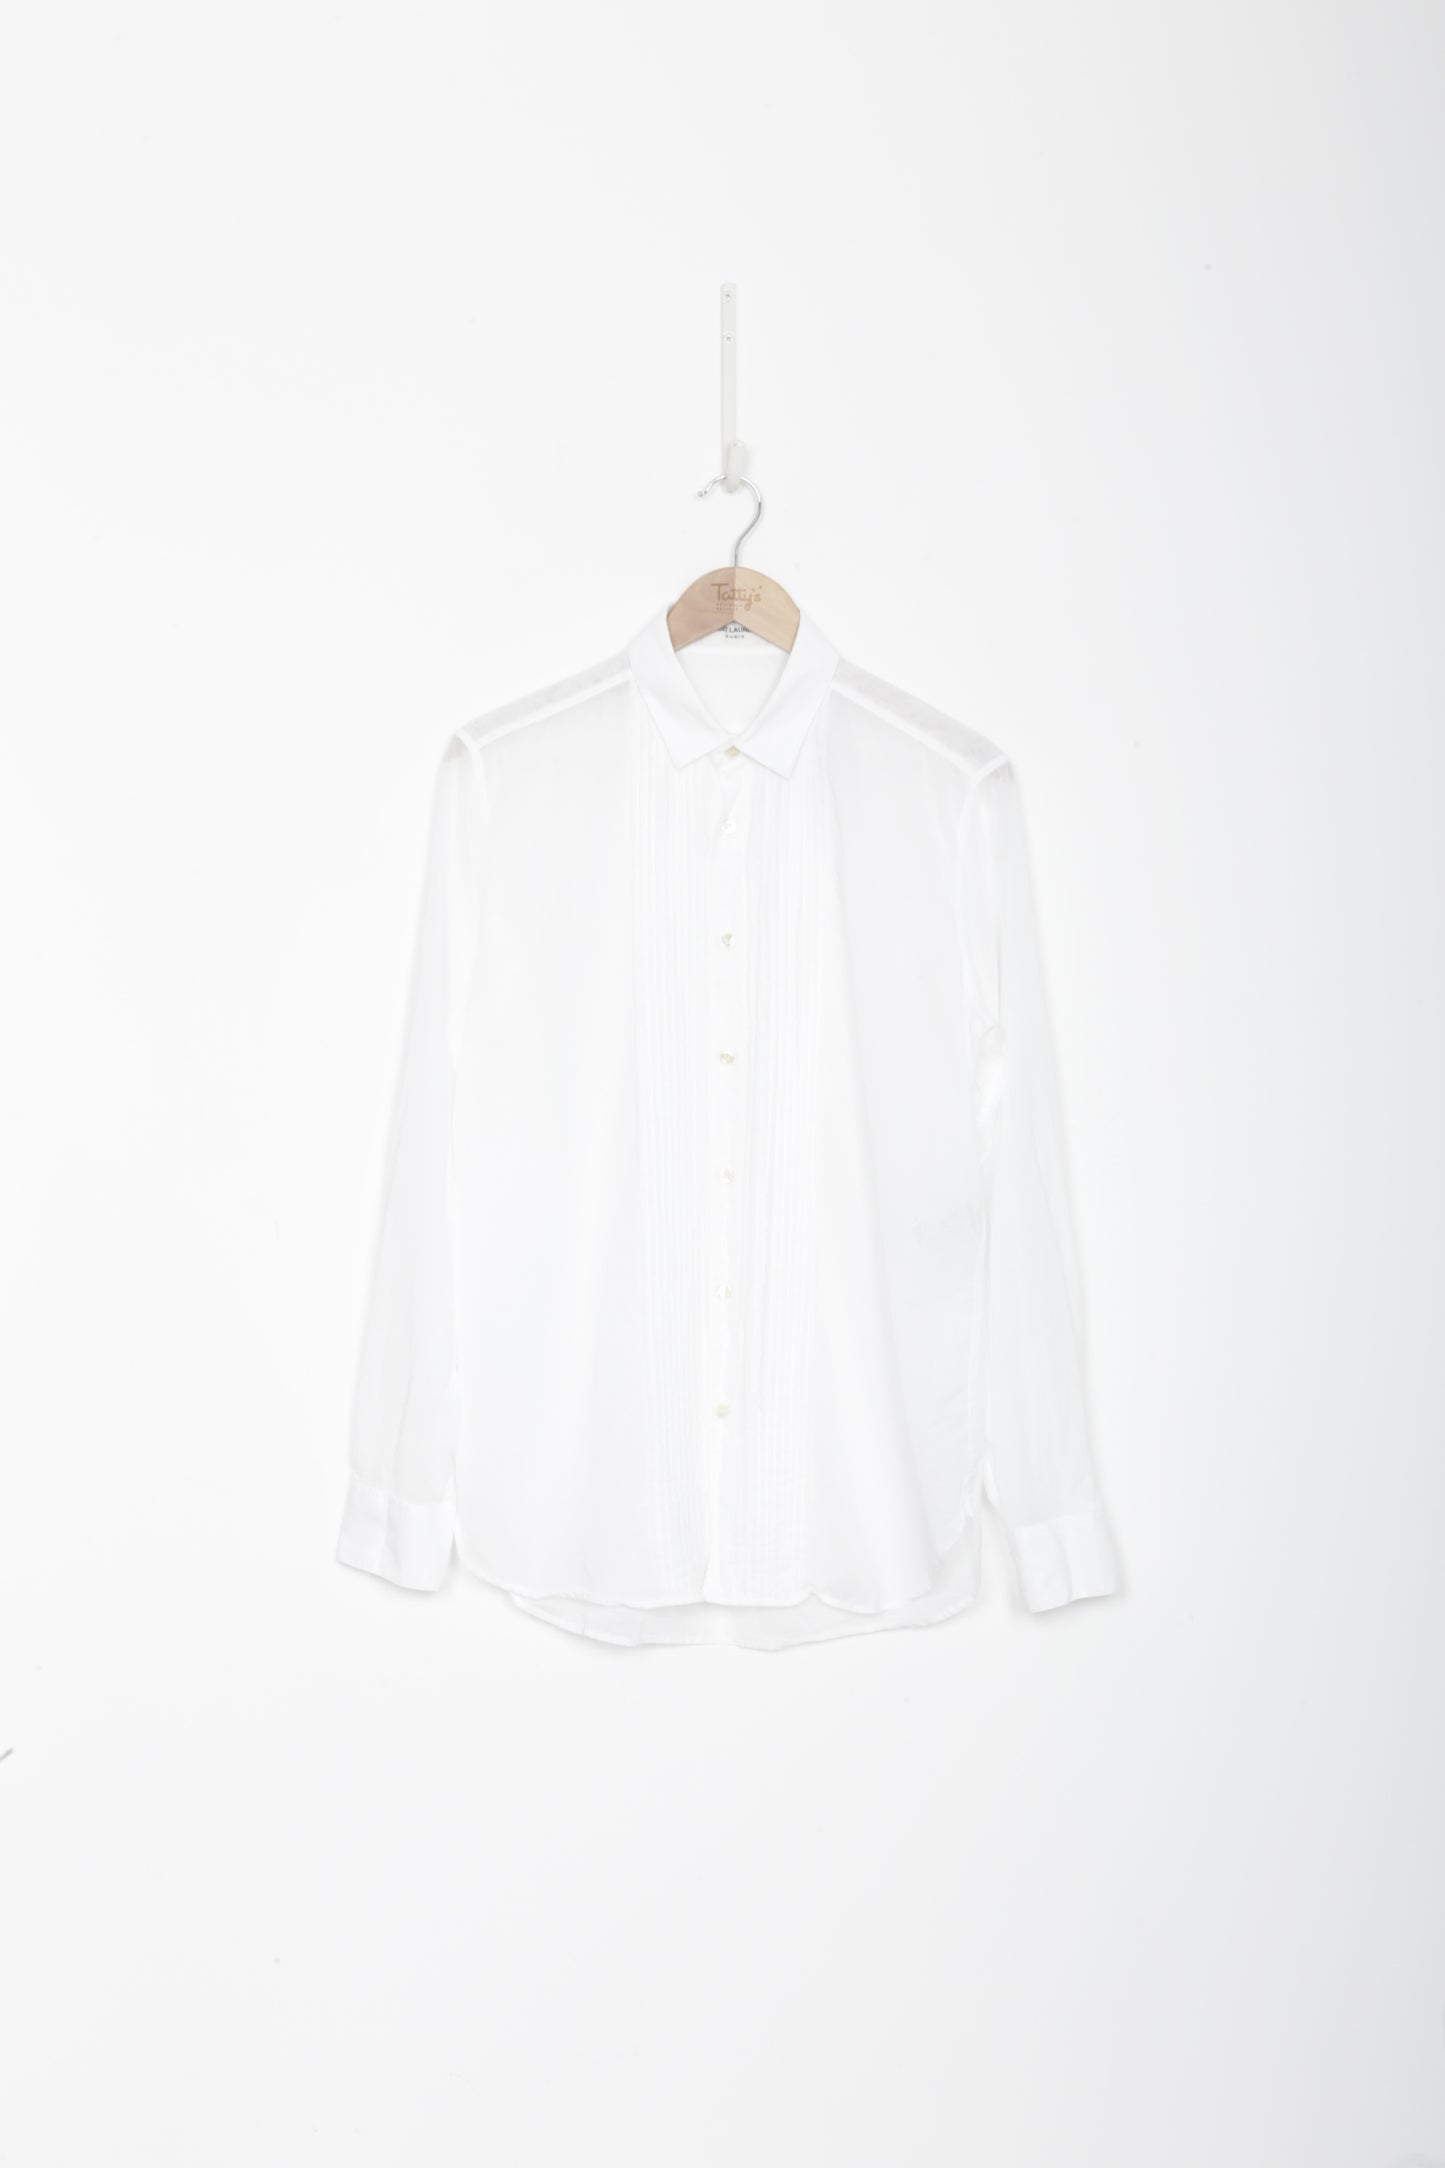 Saint Laurent Paris Mens White Shirt Size 40